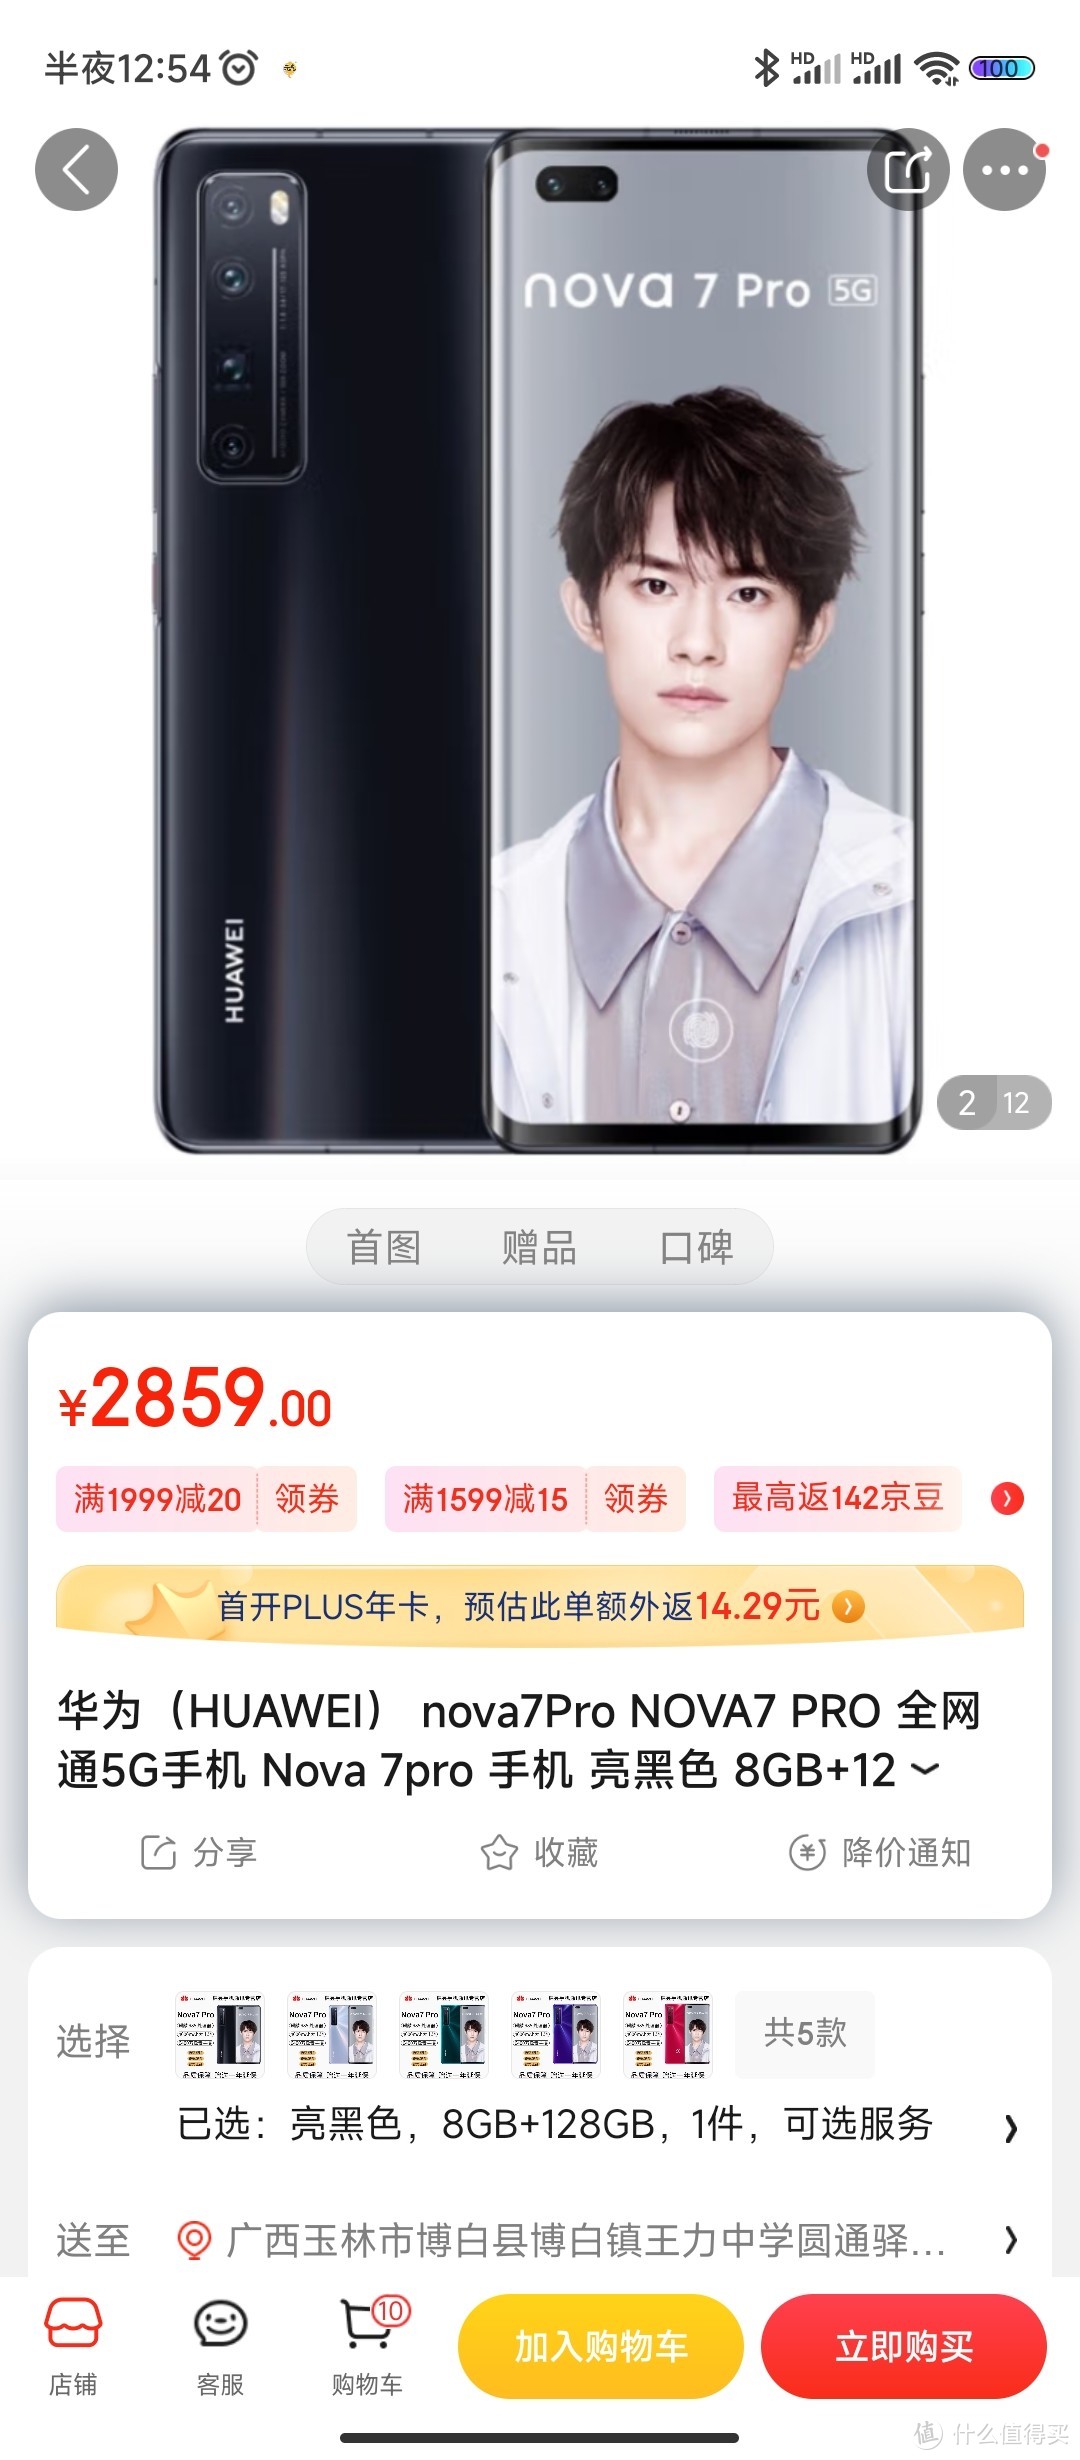 华为（HUAWEI） nova7Pro NOVA7 PRO 全网通5G手机 Nova 7pro 手机 亮黑色 8GB+128GB